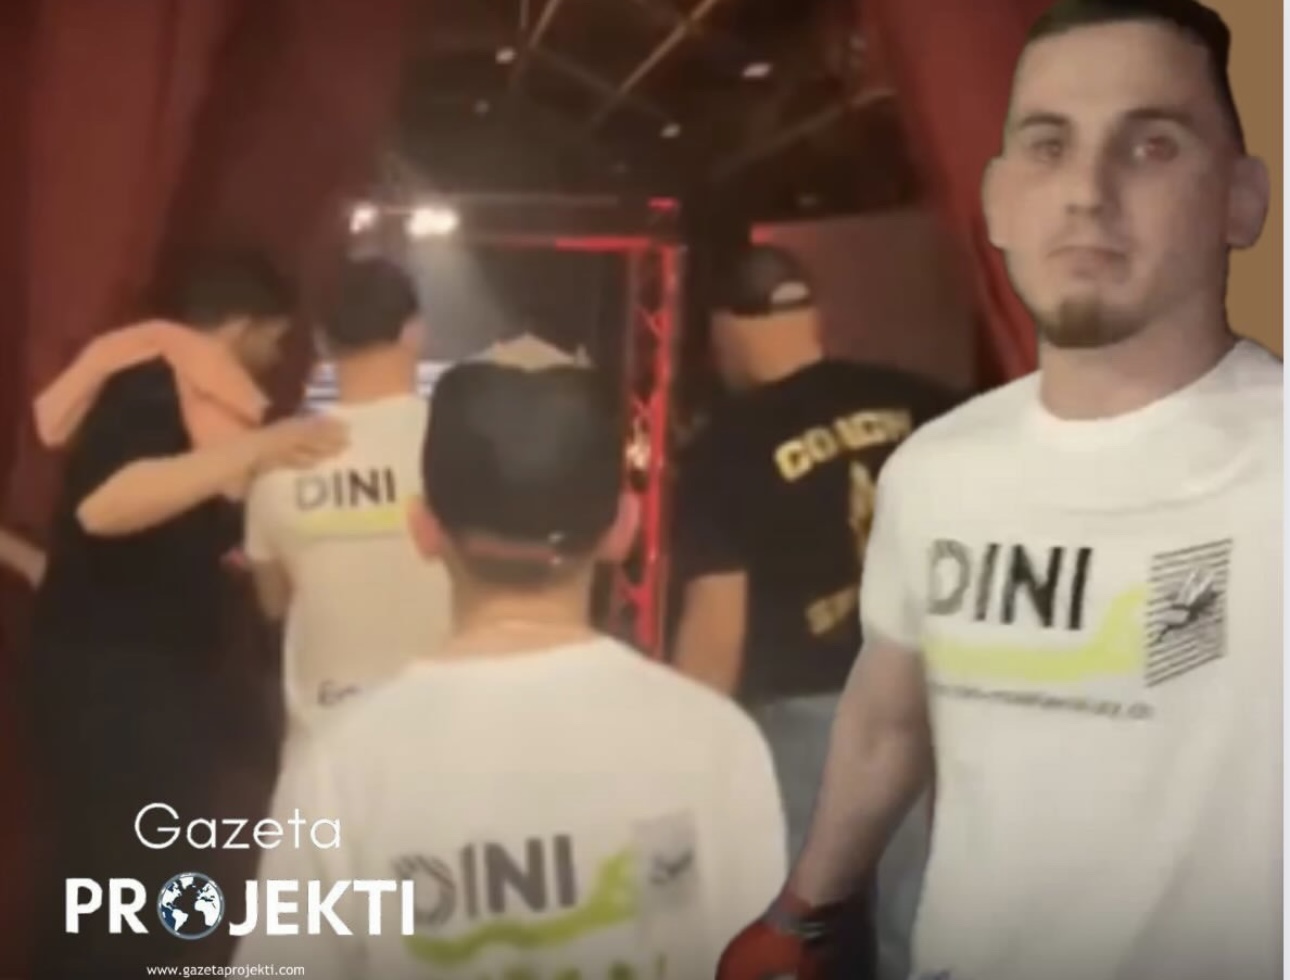 Dukwach Kadimagomaev, futet në kafaz me logon e kompanisë shqiptare “DINI INSEKTENCHUTZ”